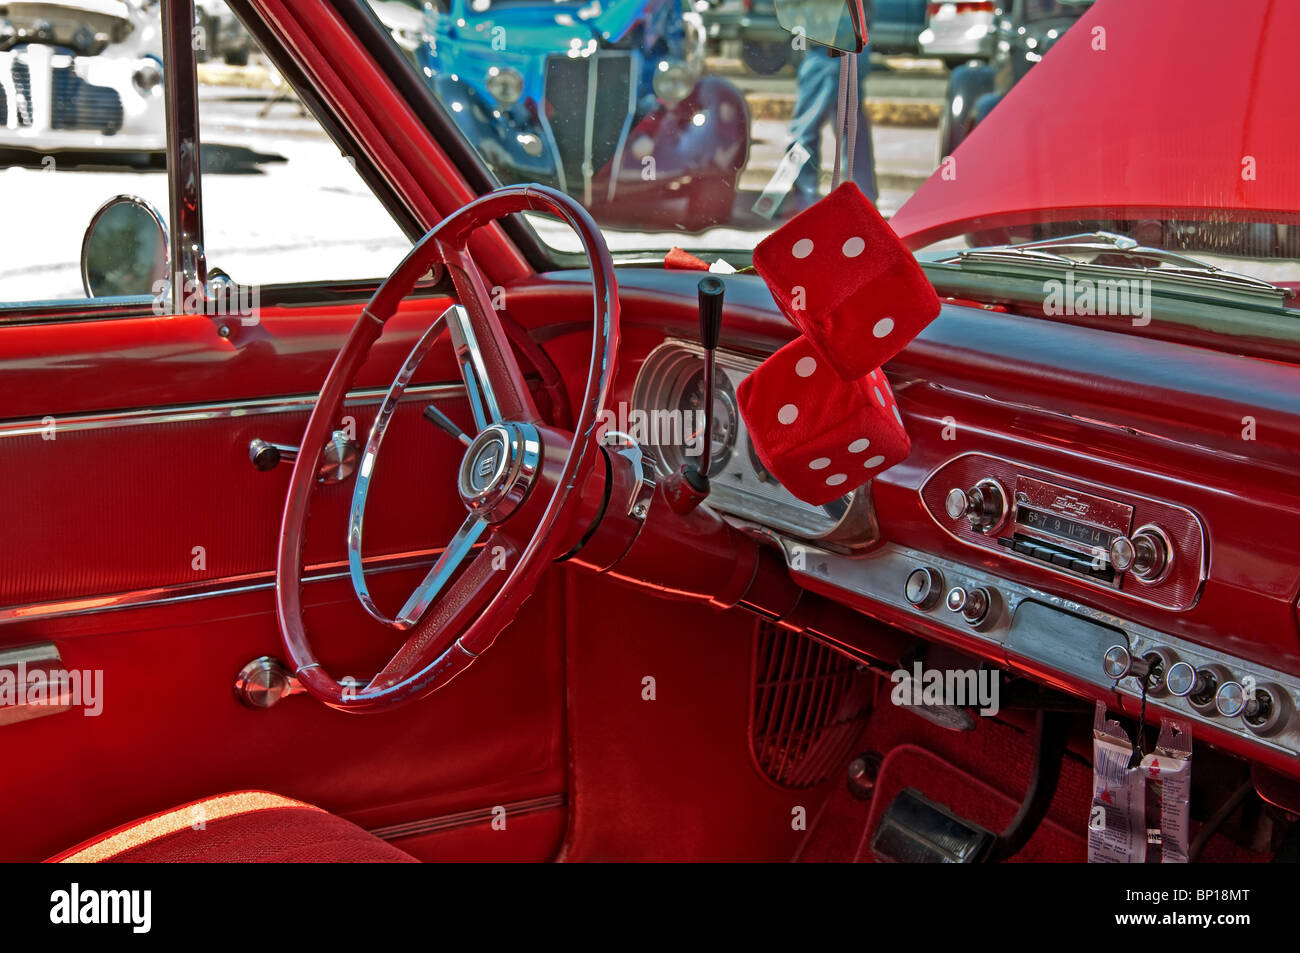 Diese redaktionelle Bild ist eine fünfziger Jahre Ära, Retro-Innenraum von einem restaurierten klassischen Chevrolet mit einer Kirsche rote Innenausstattung. Stockfoto